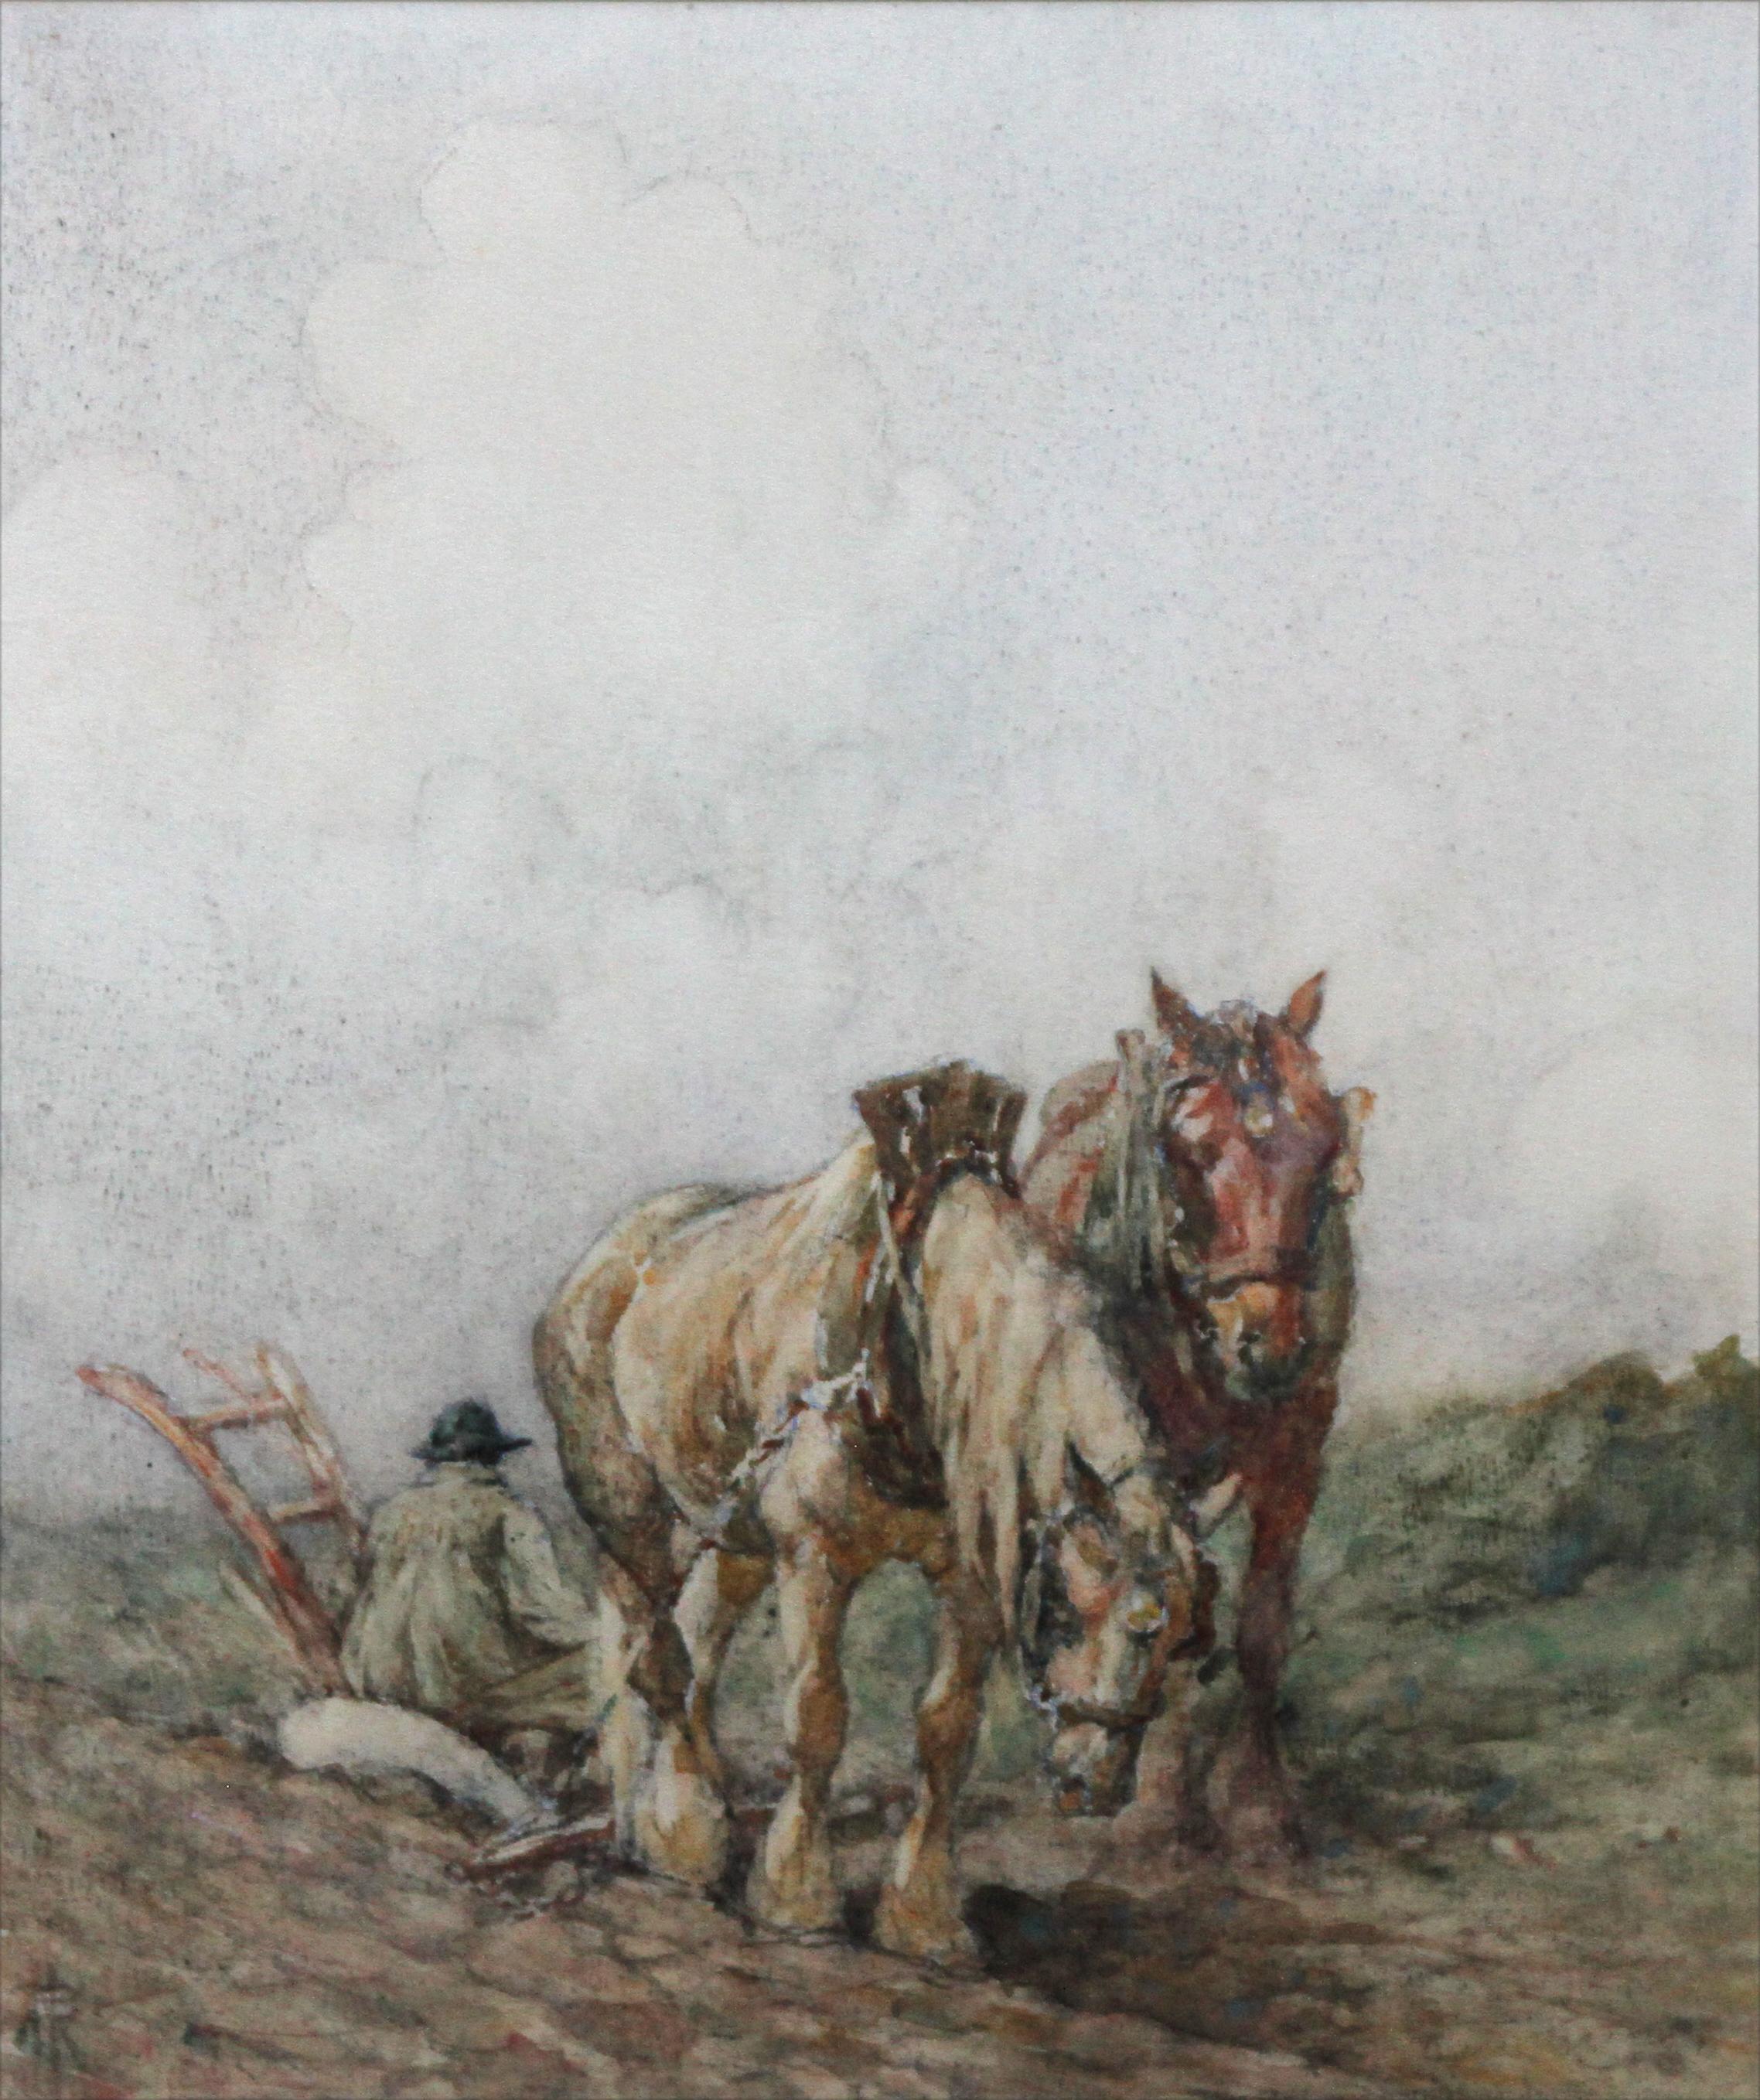 Pferde auf dem Hügel – schottische impressionistische Landschafts-Pferdekunst mit Pferdemotiv, 1900 – Art von Nathaniel Hughes John Baird